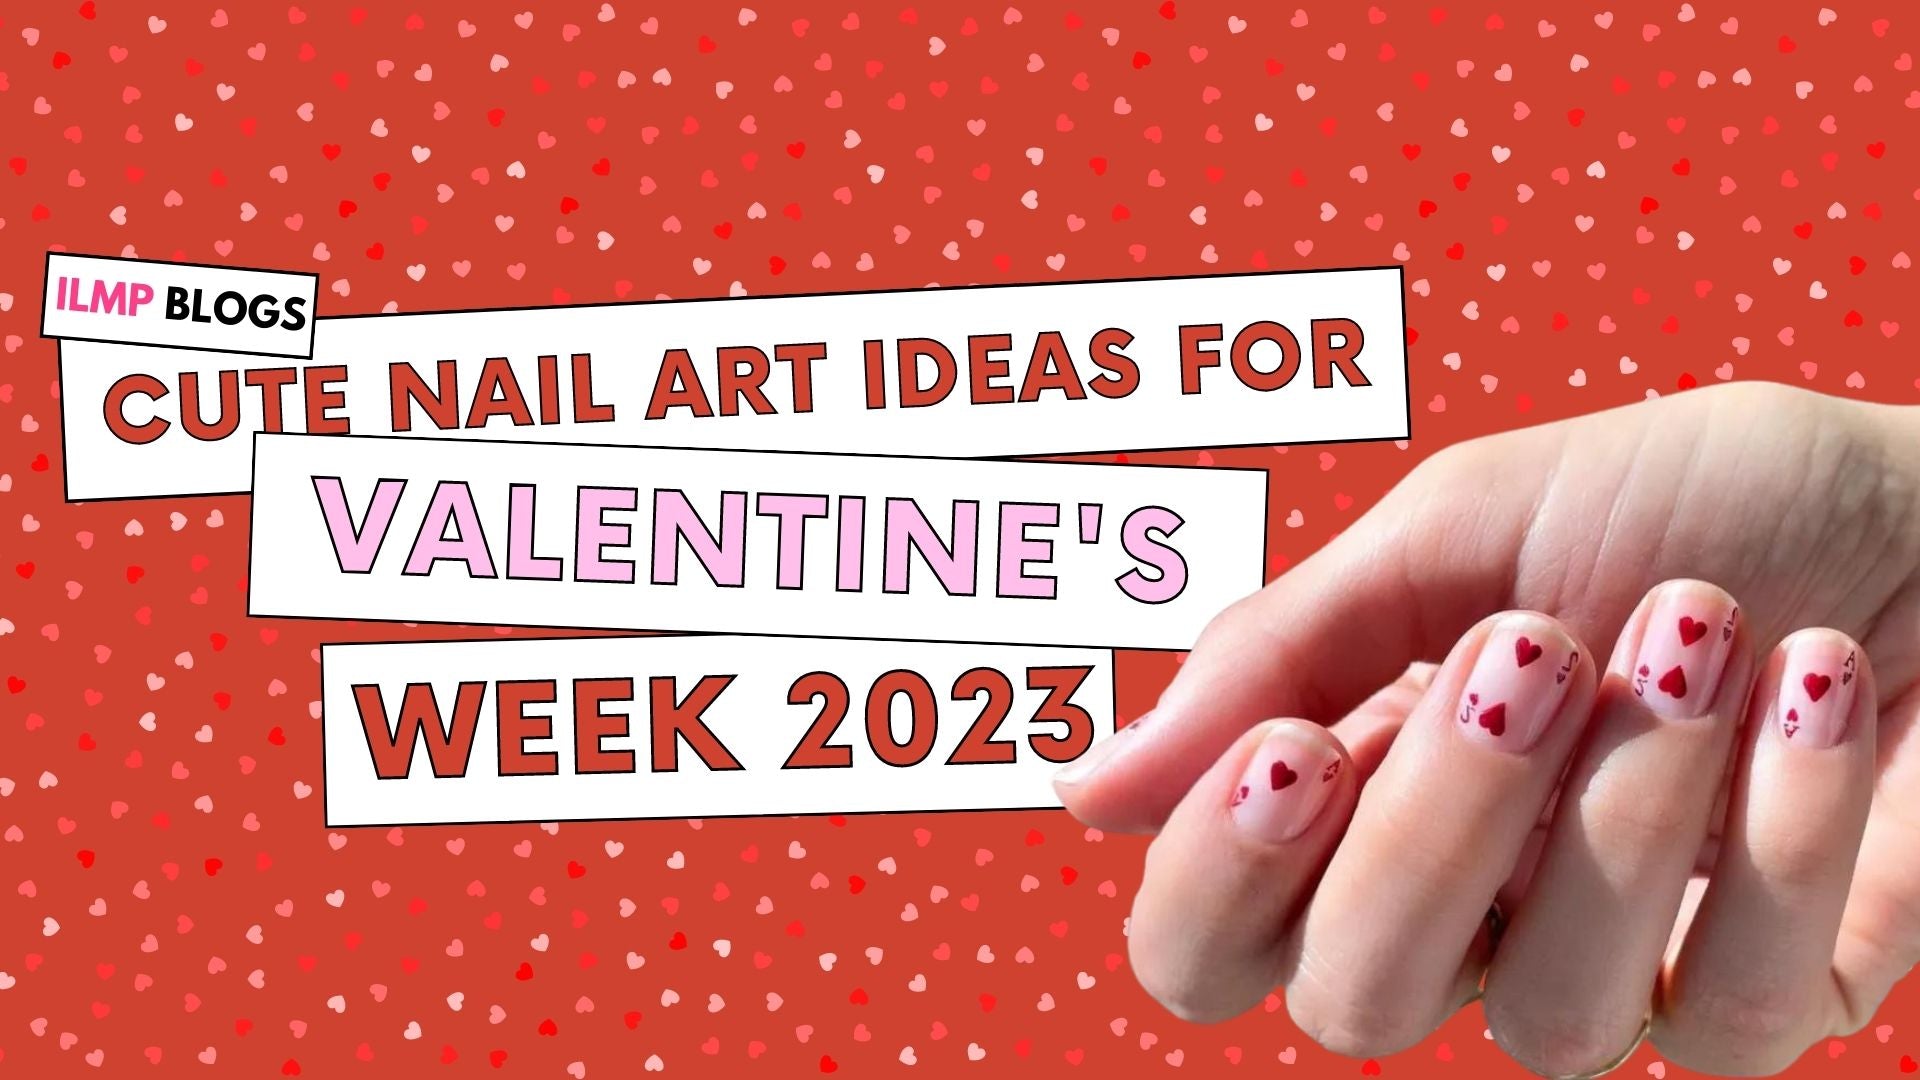 Nail designs | Nails, Gel nails, Stylish nails art